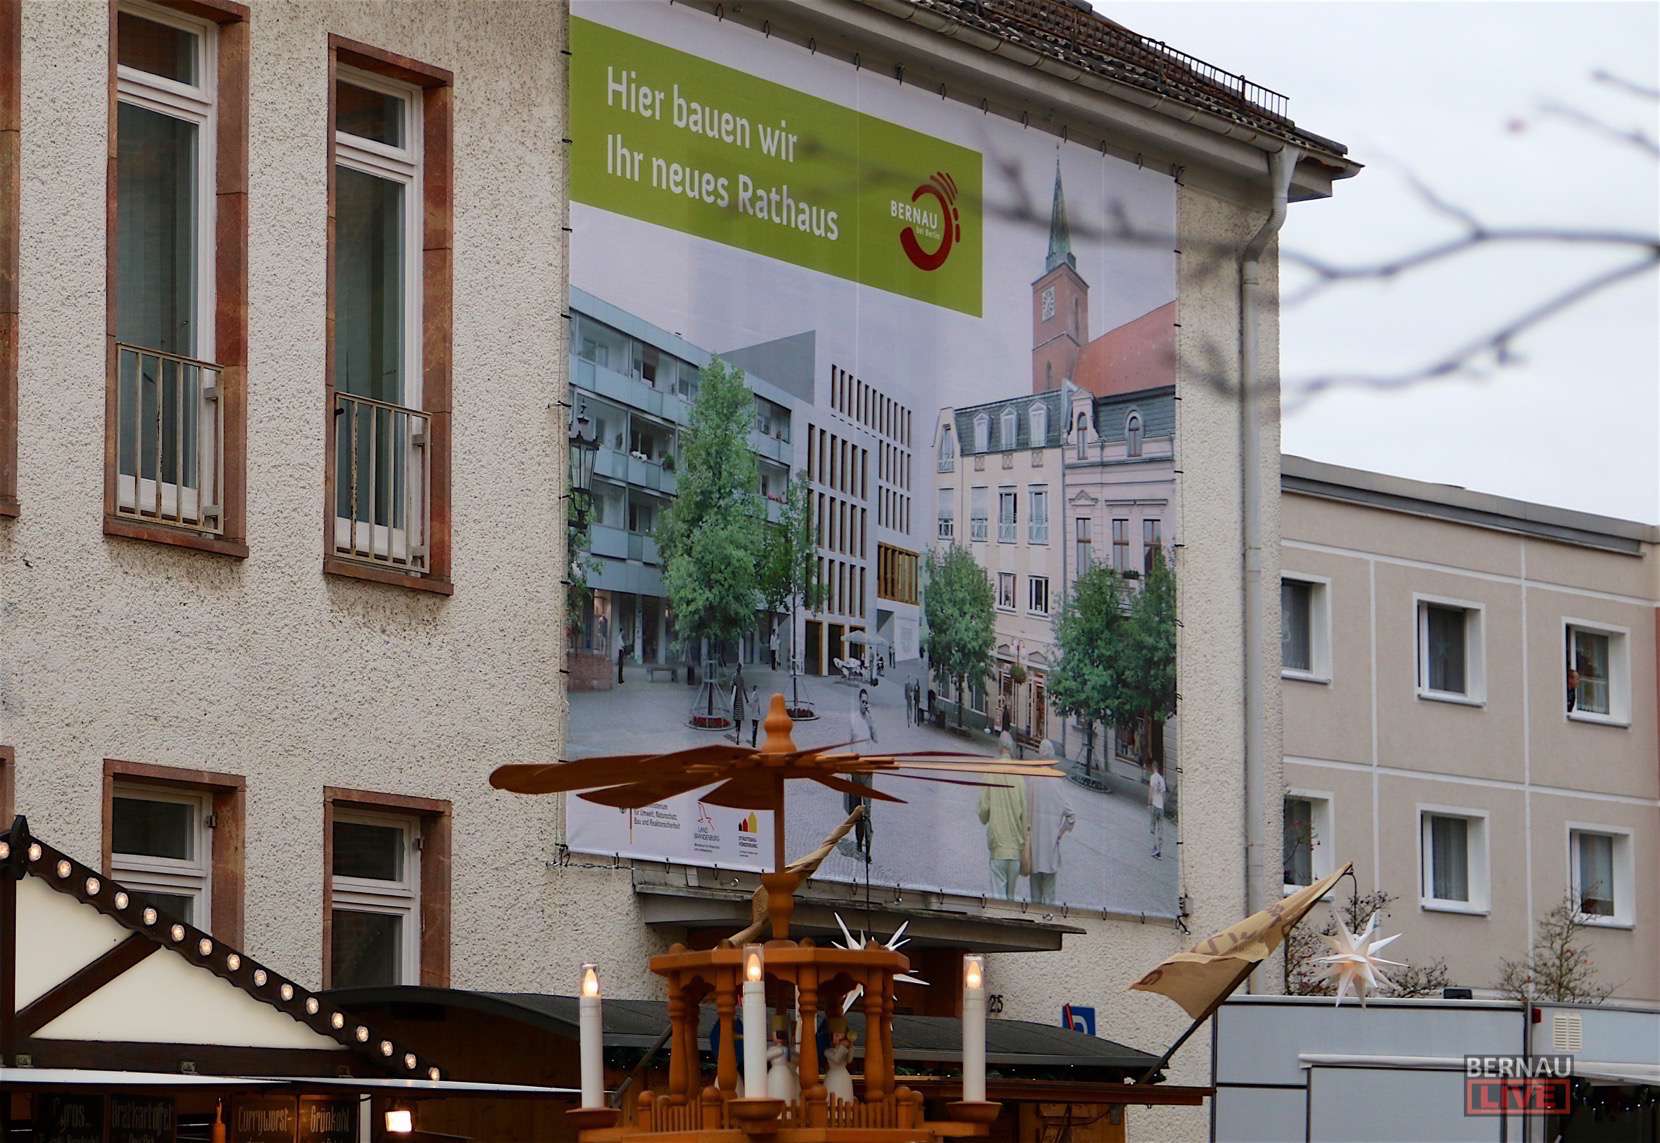 Stadt Bernau informiert in einer Ausstellung zum Rathausneubau